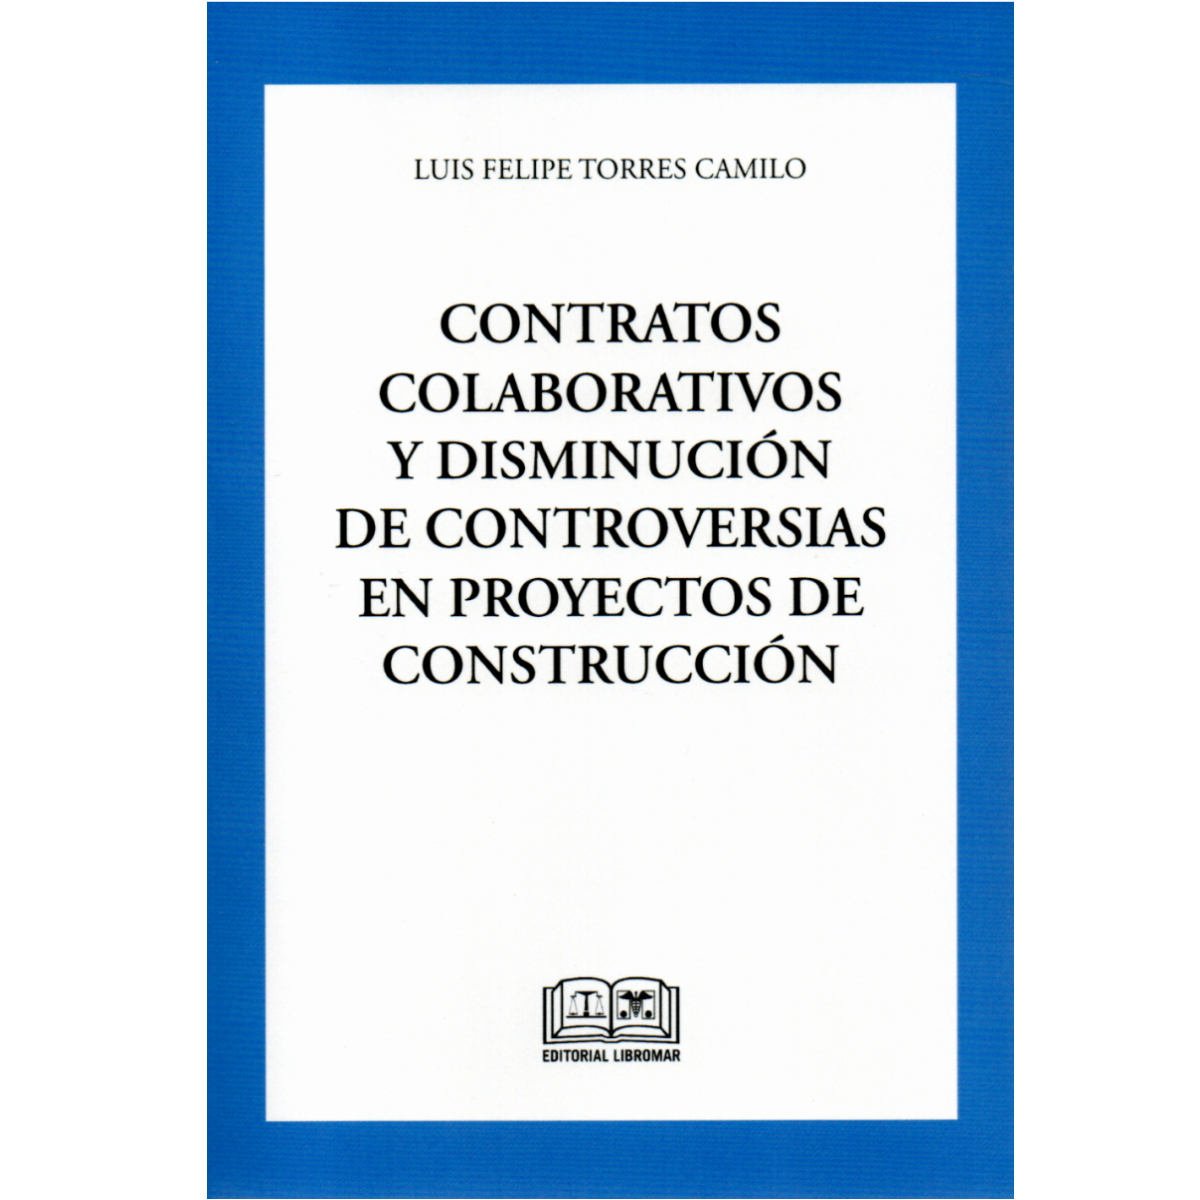 Libro indaga las controversias de la construcción y posible reducción con uso de contratos colaborativos